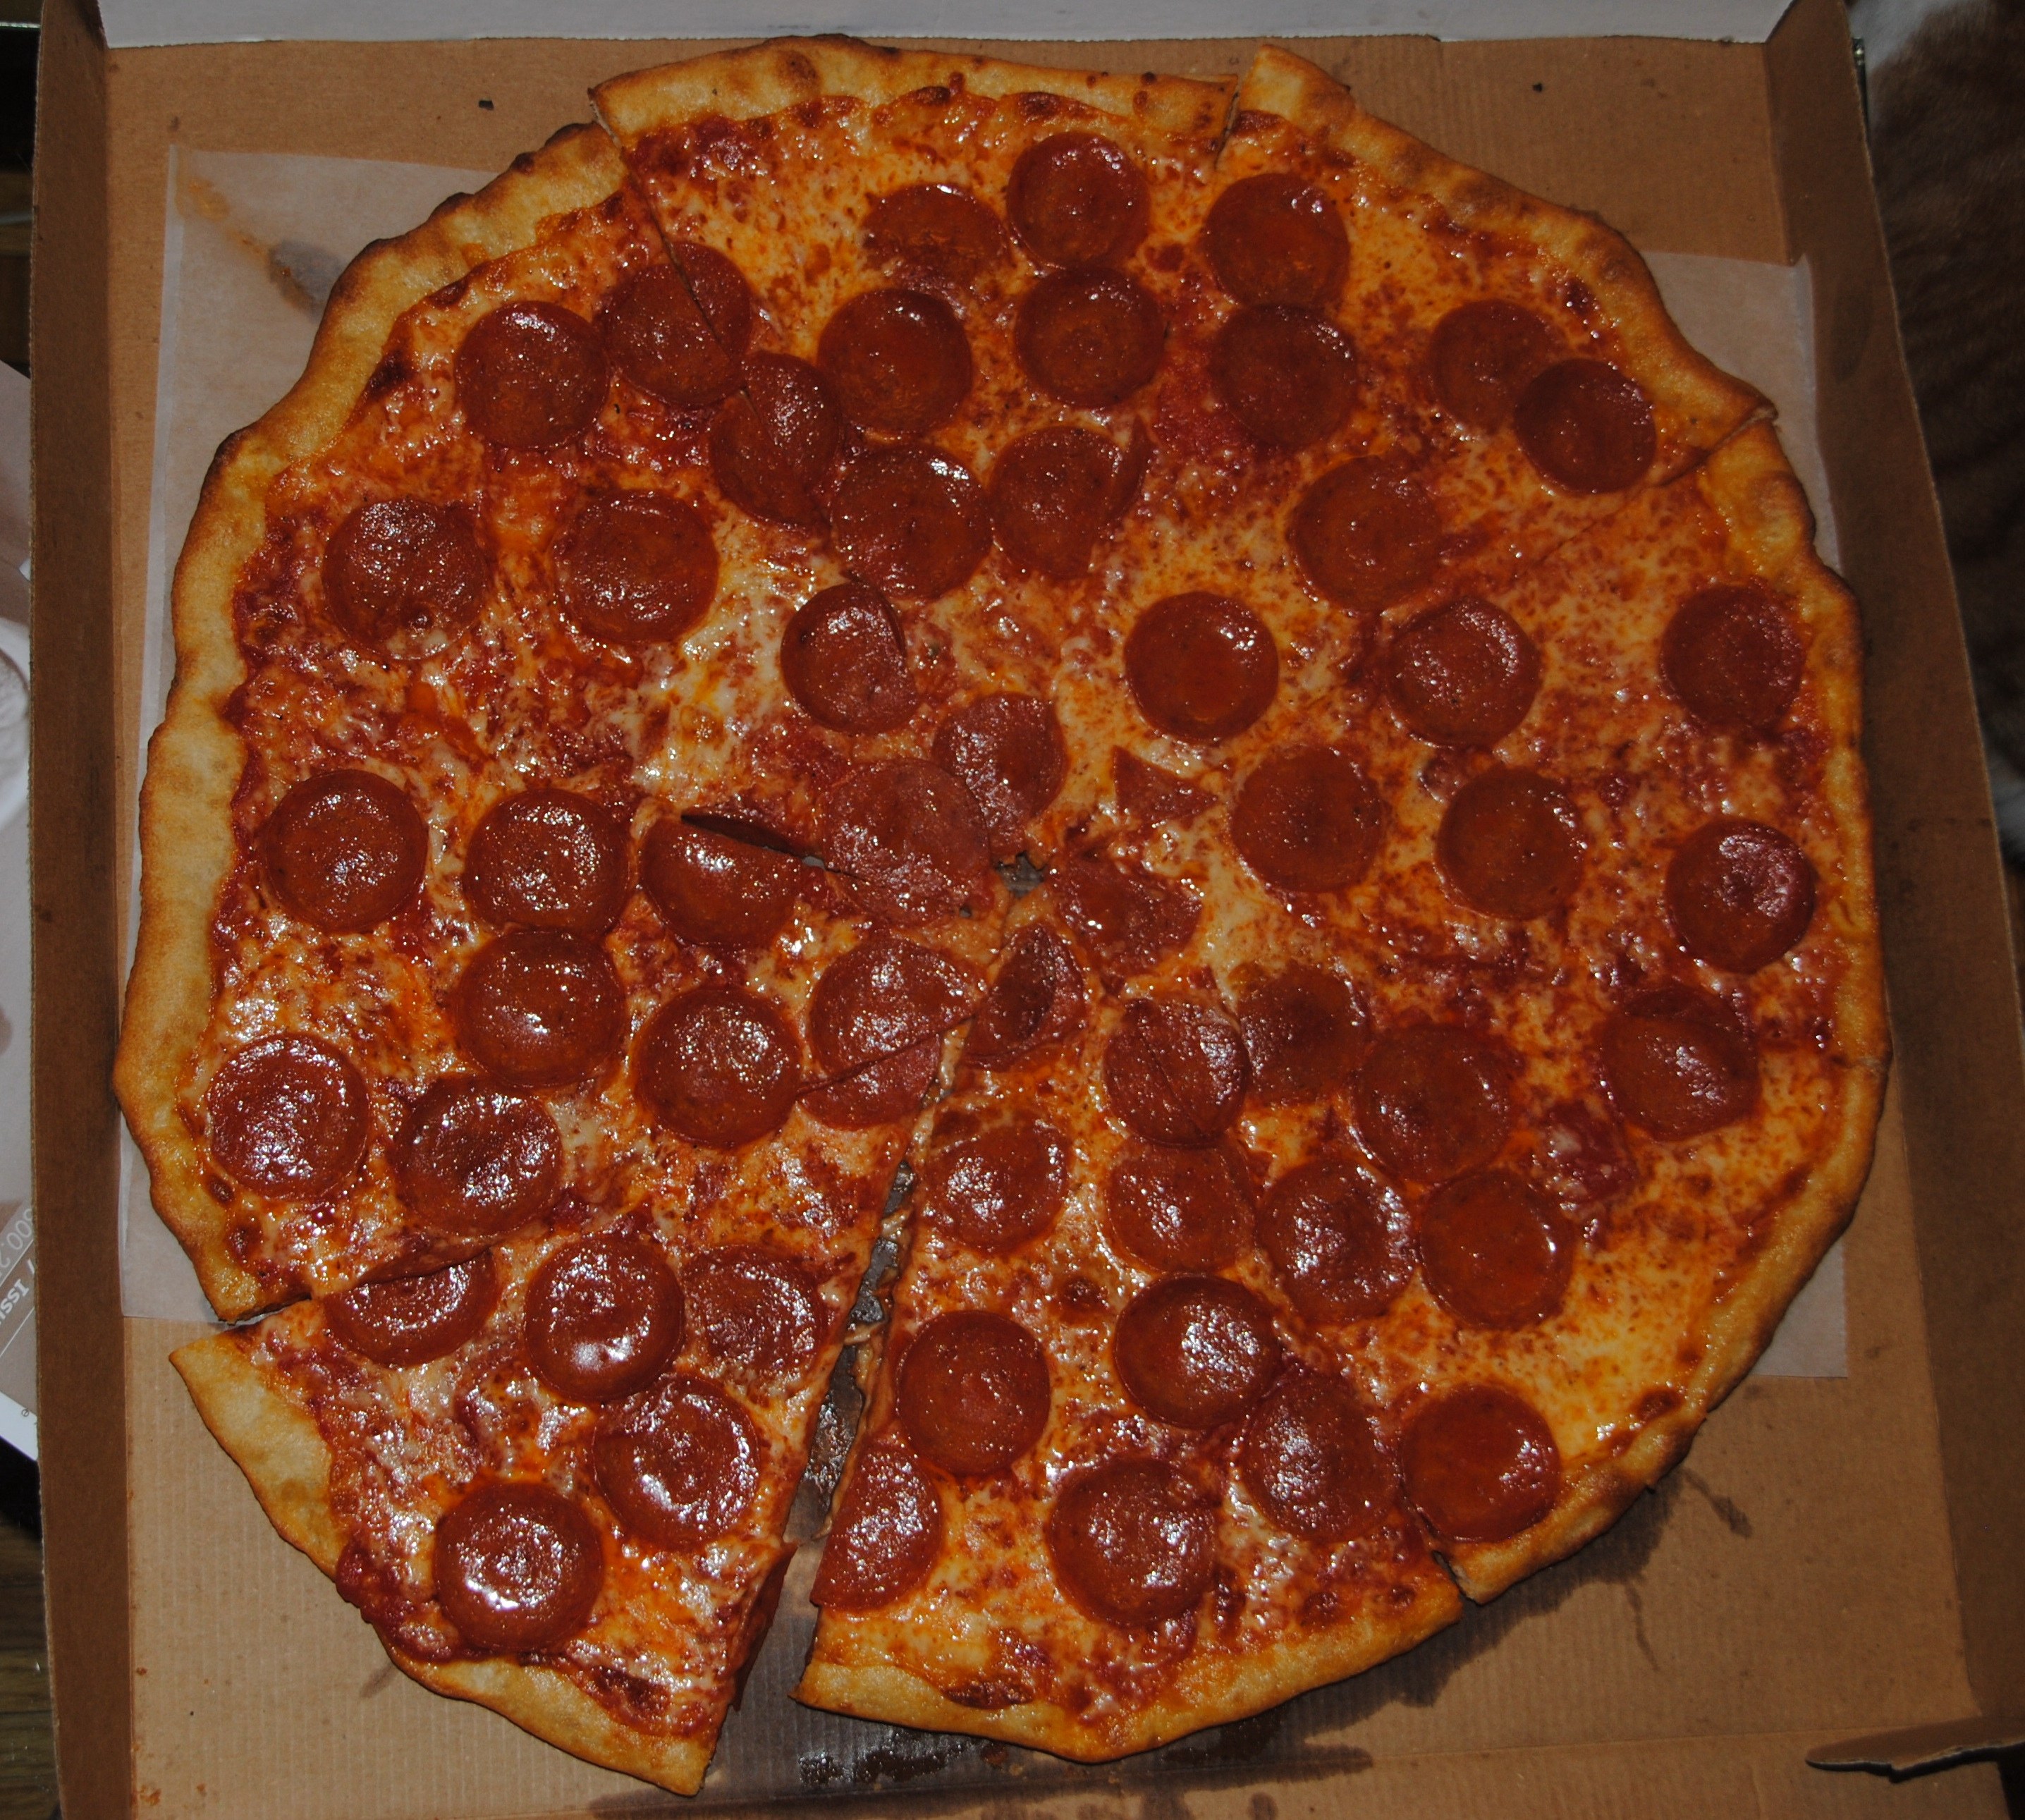 Circle Pizza